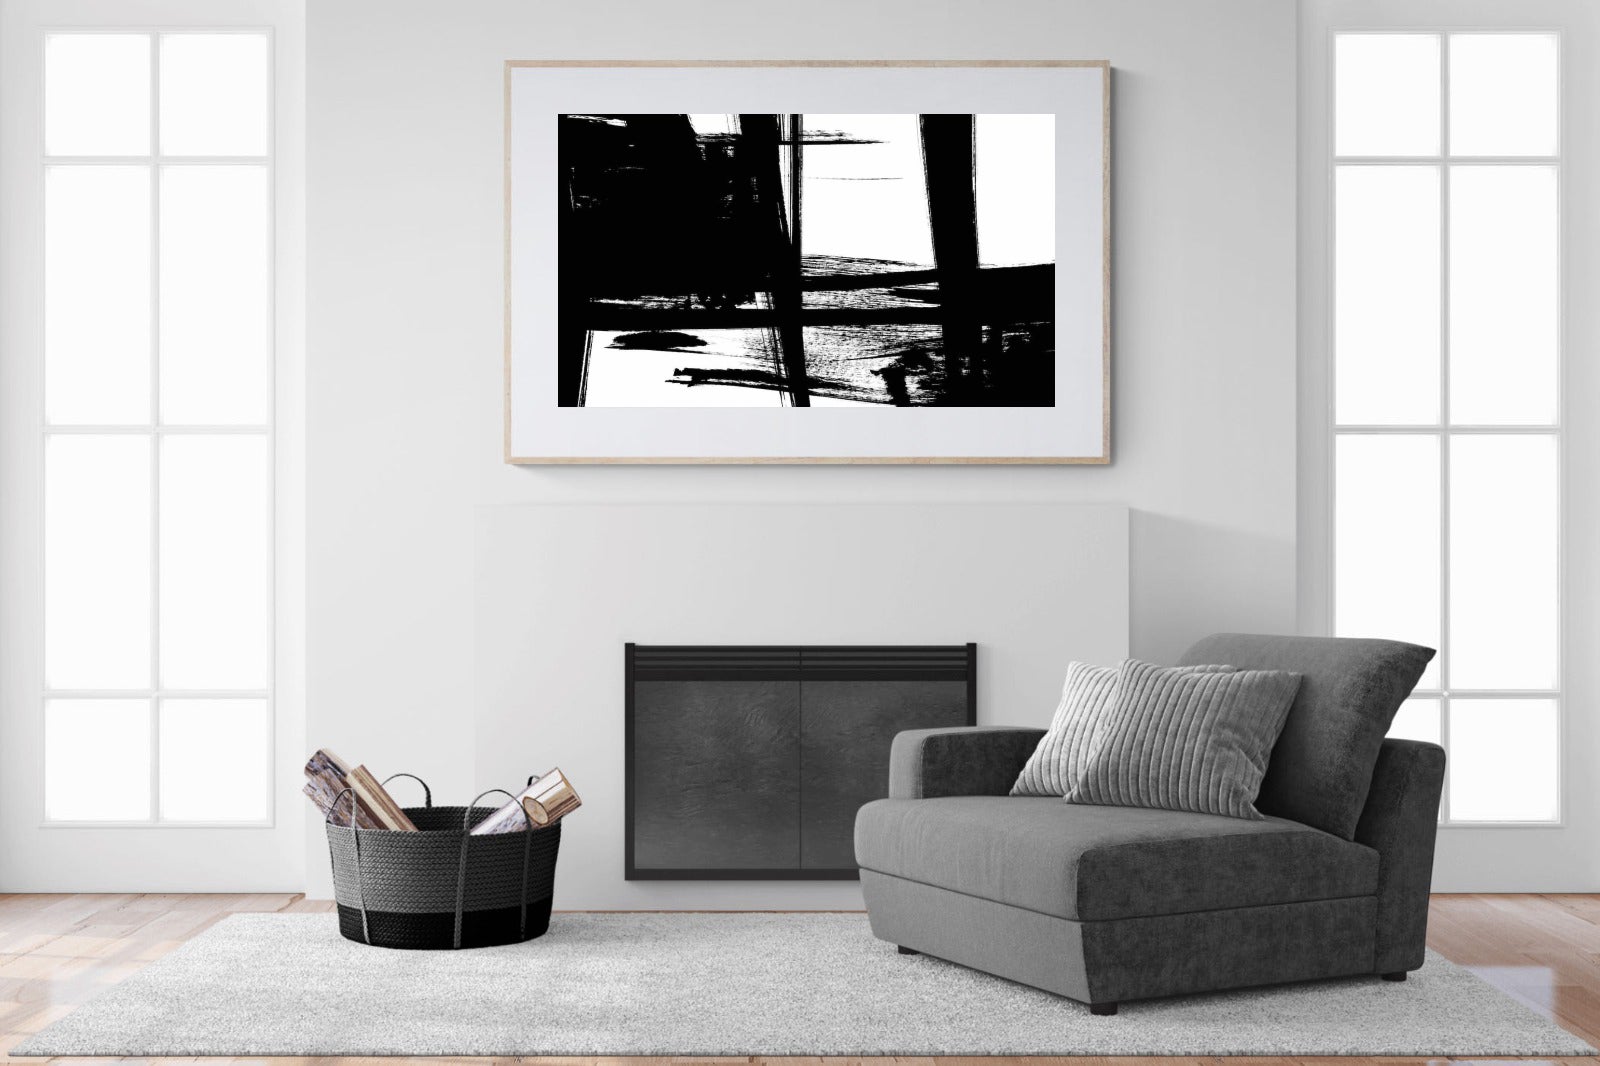 Hijinks-Wall_Art-150 x 100cm-Framed Print-Wood-Pixalot